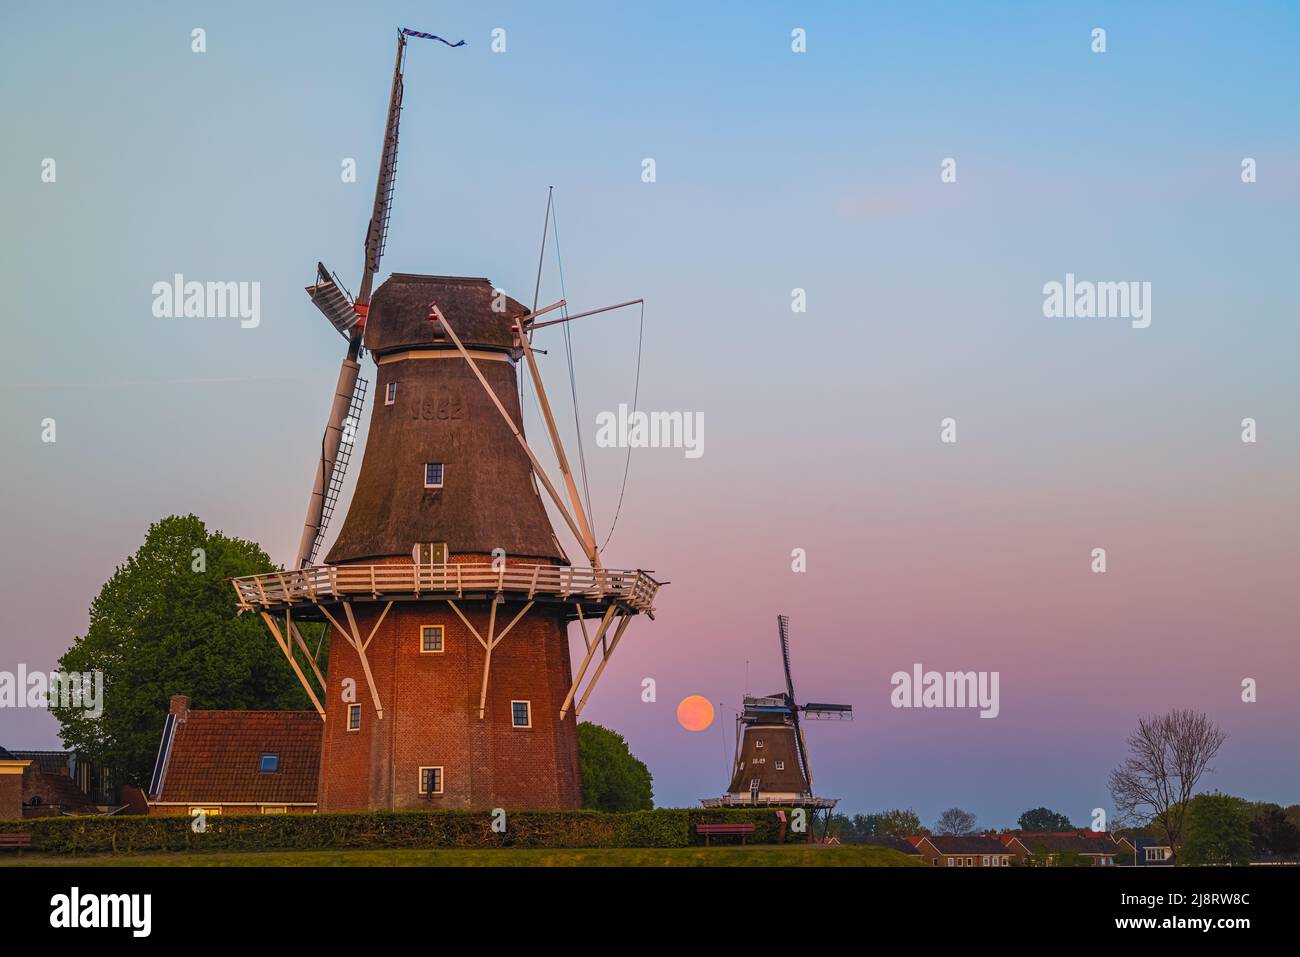 Puesta de sol y puesta de luna llena cerca de Flour Mill 'De Hoop' y 'Zeldenrust' en la ciudad holandesa de Dokkum, en la provincia de Frisia en el norte Foto de stock